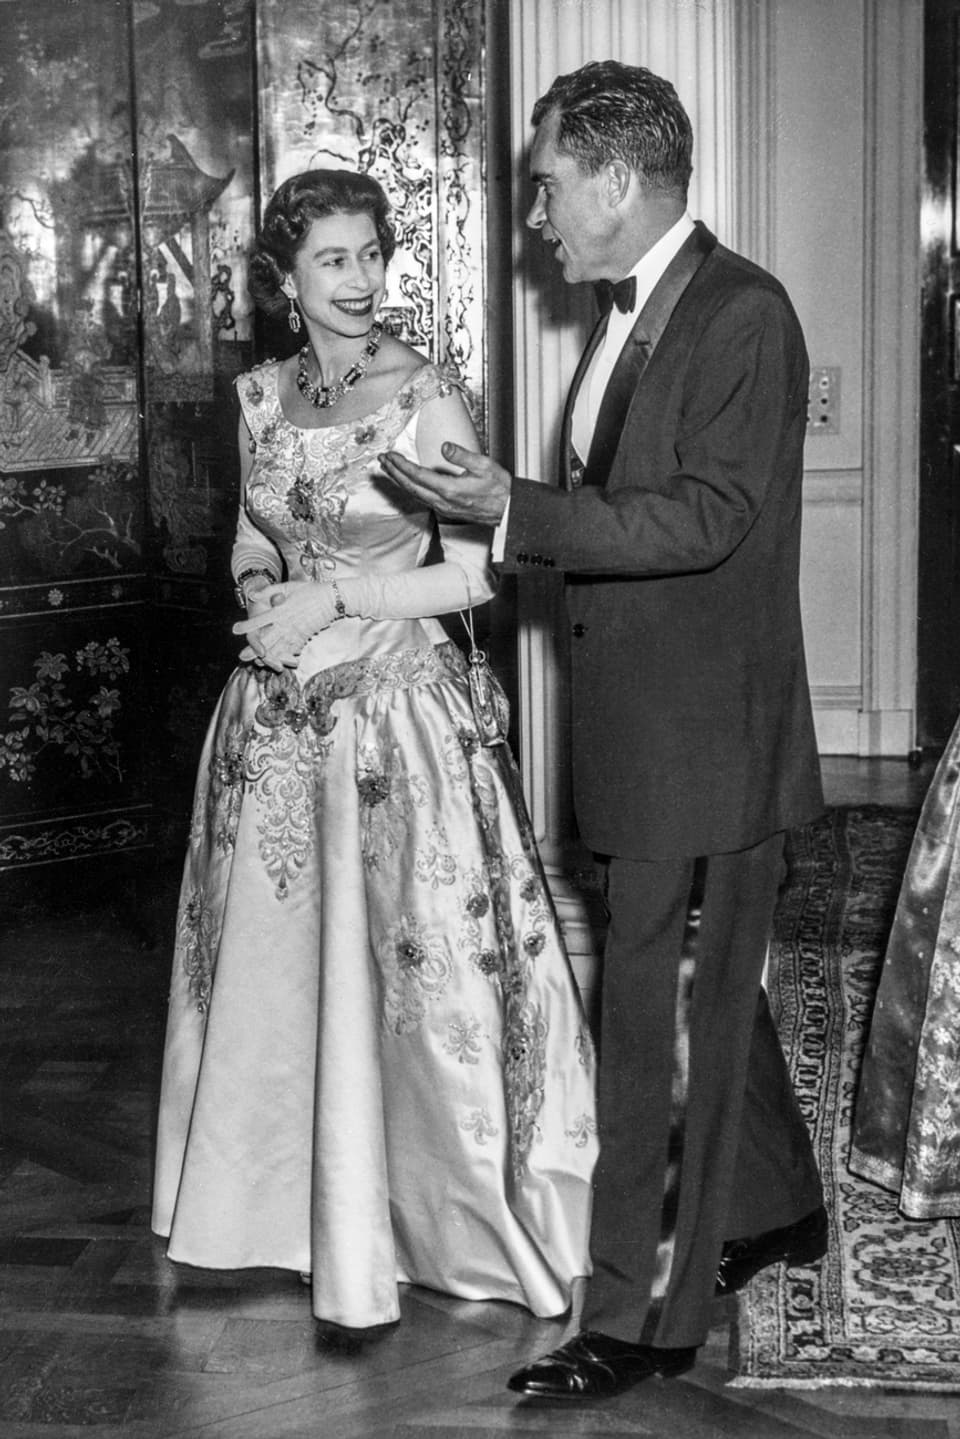 Die junge Queen Elisabeth in einem wunderschönen Ballkleid und Handschuhen. Neben ihr steht Richard Nixon.